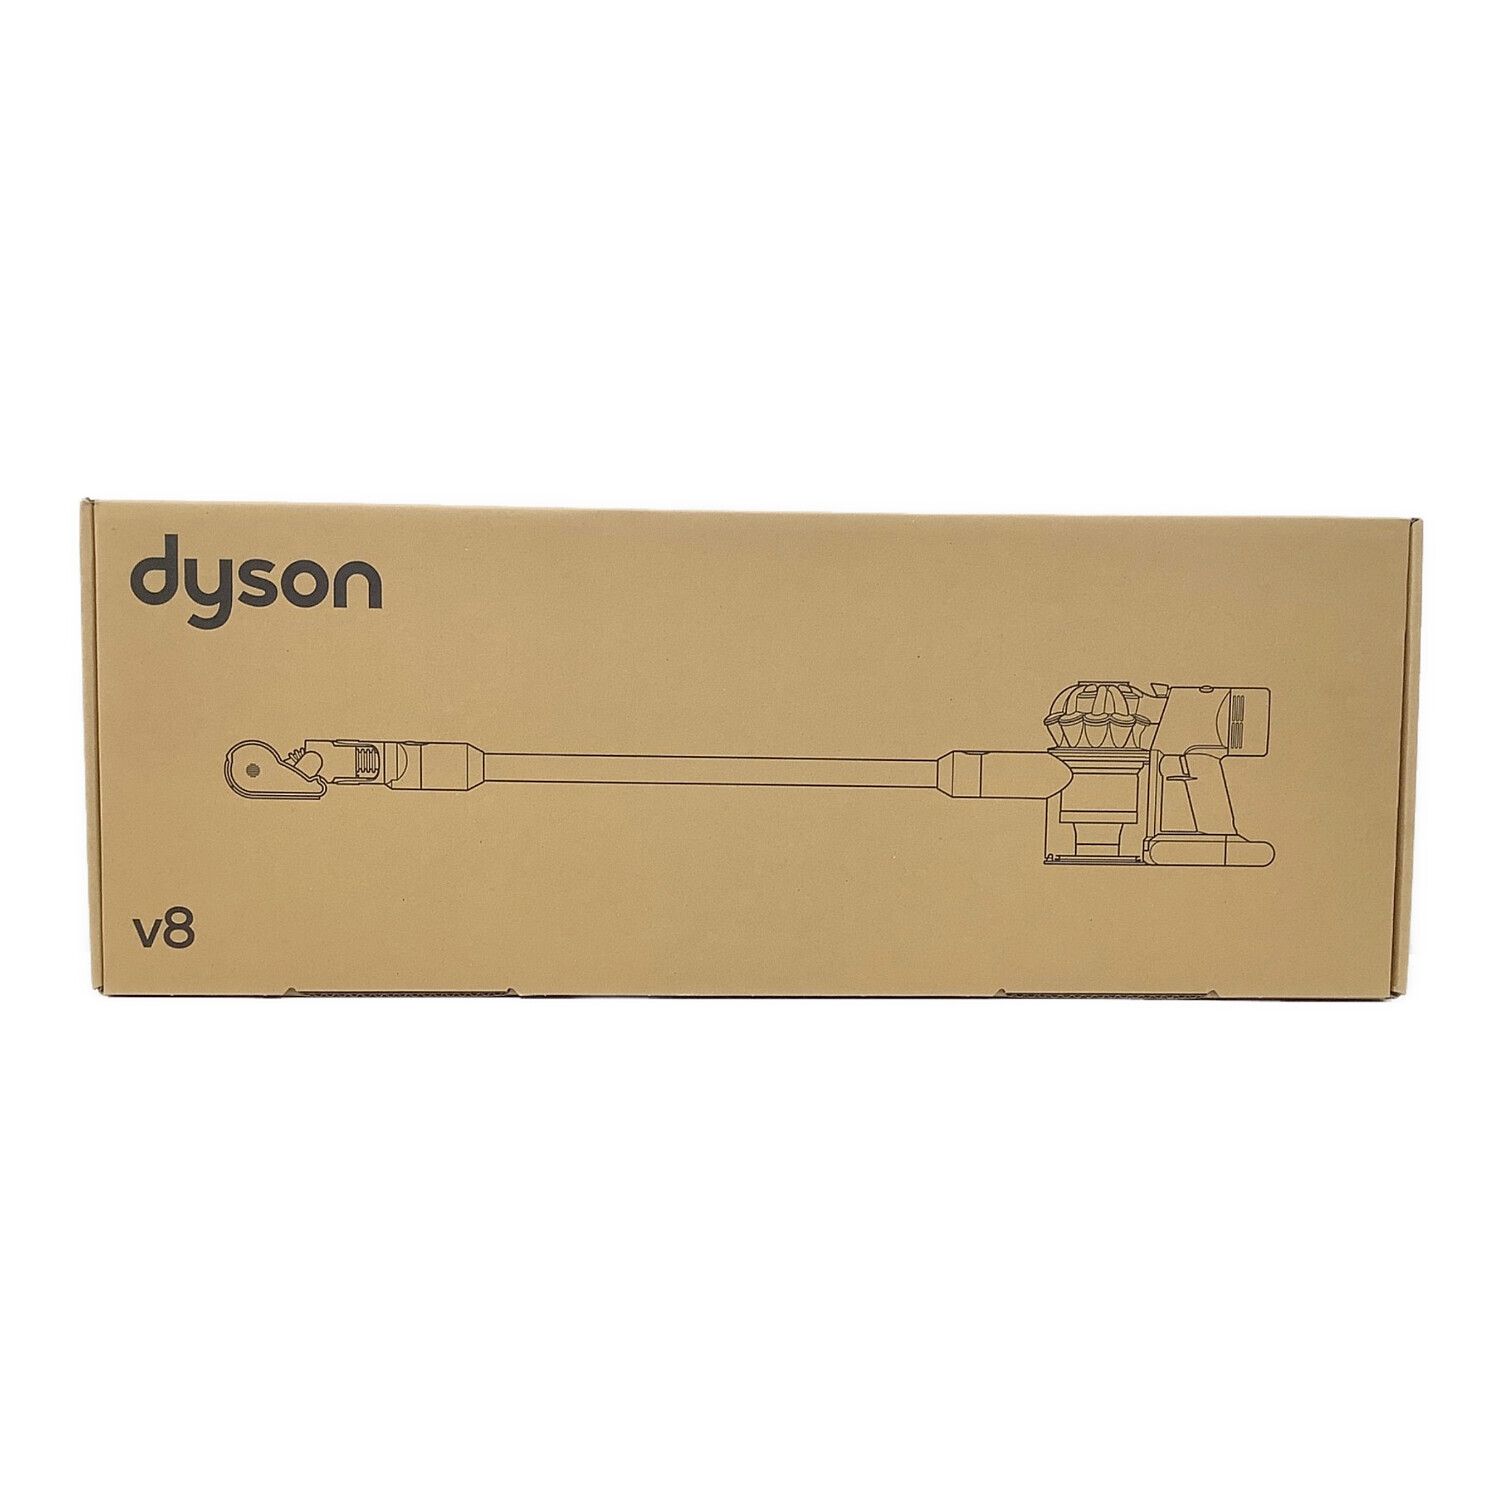 dyson (ダイソン) コードレスクリーナー サイクロン式 モーターヘッド